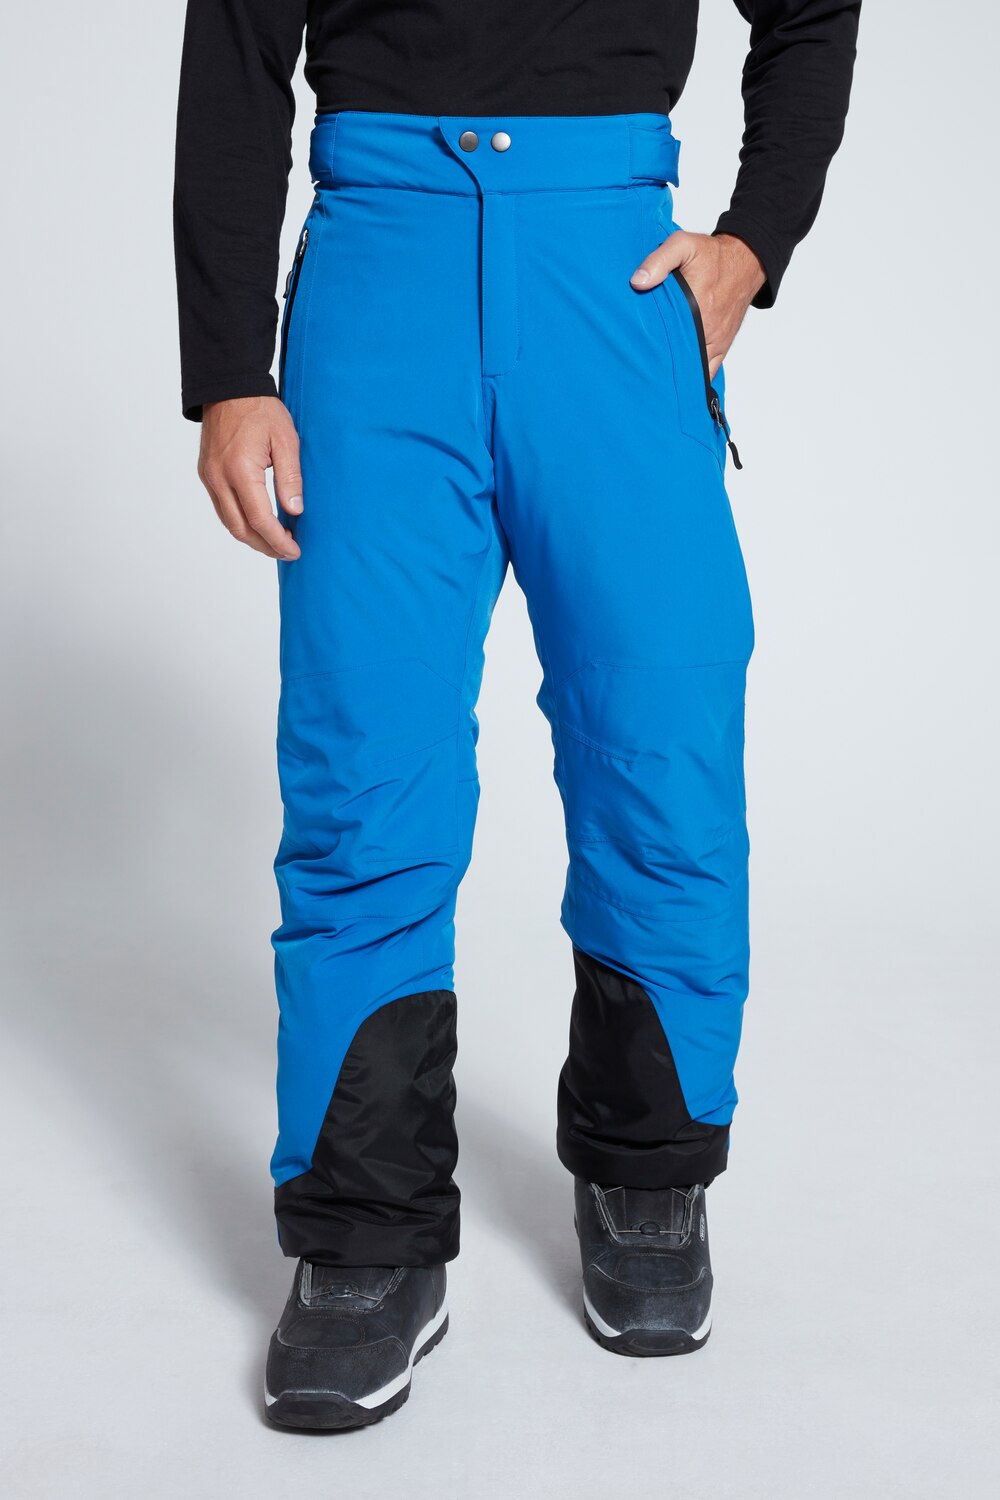 Grote Maten skibroek, Heren, blauw, Maat: 5XL, Polyester, JP1880